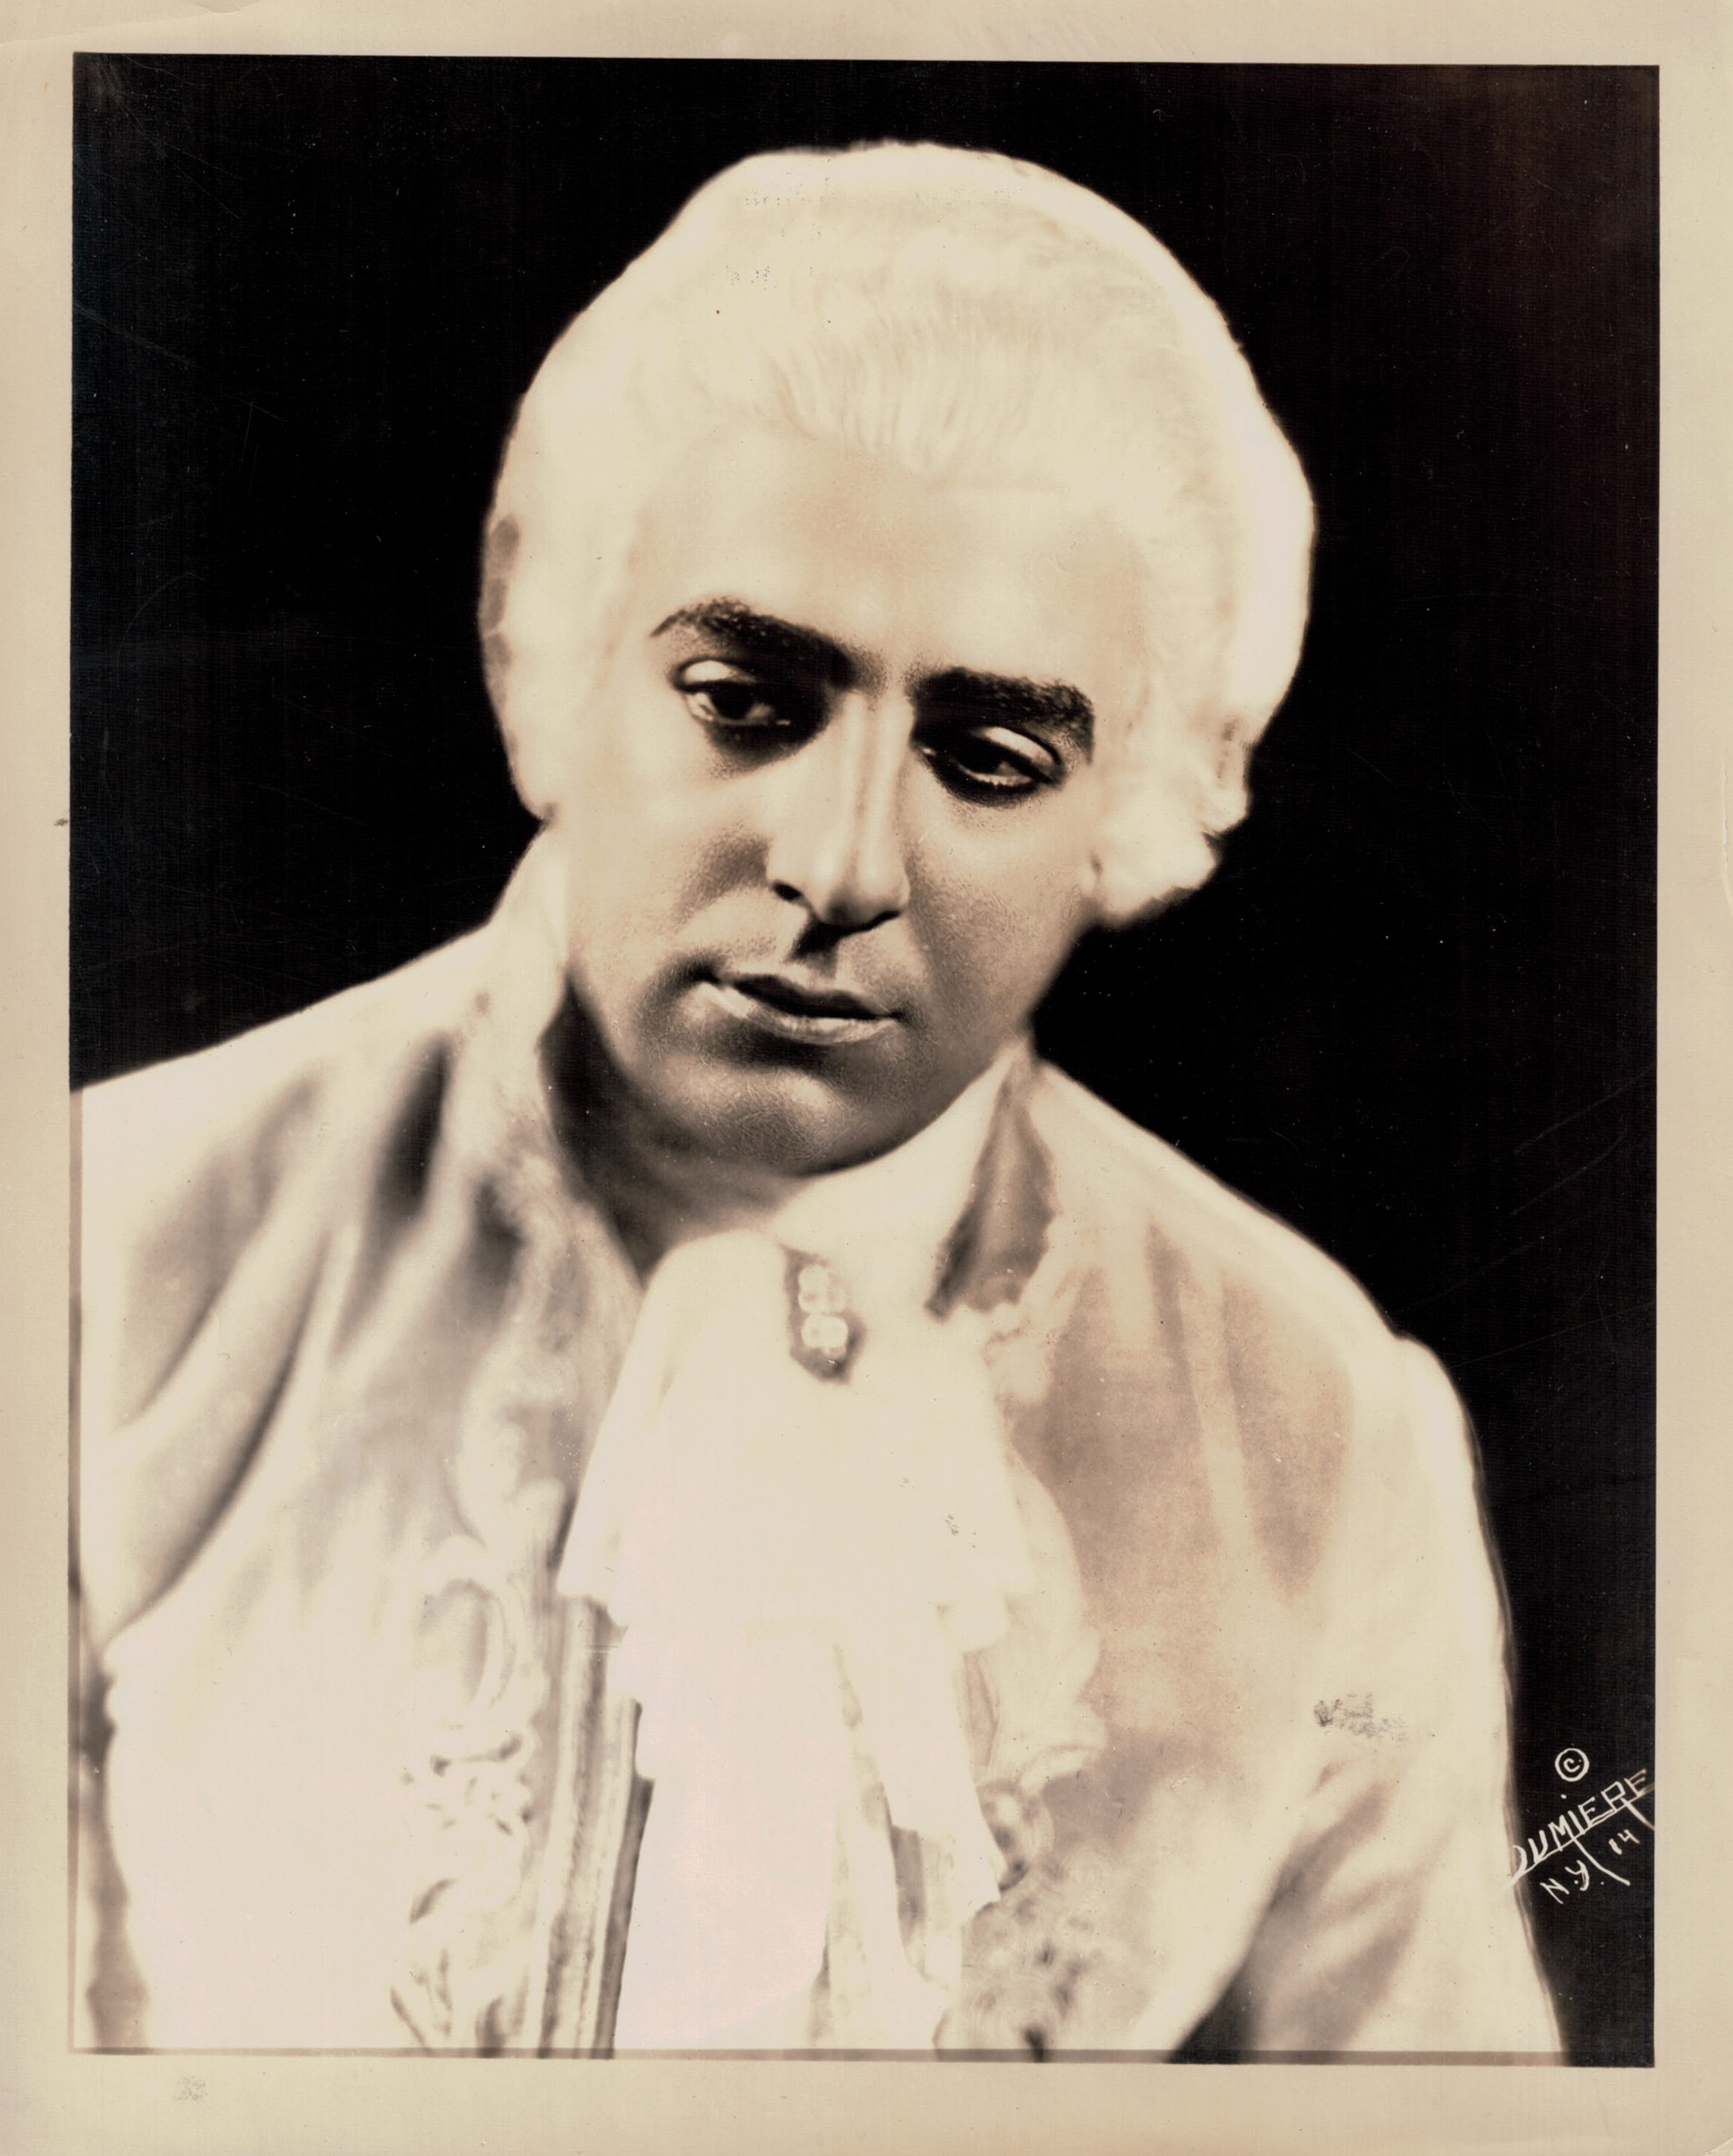 Tito Schipa Portrait